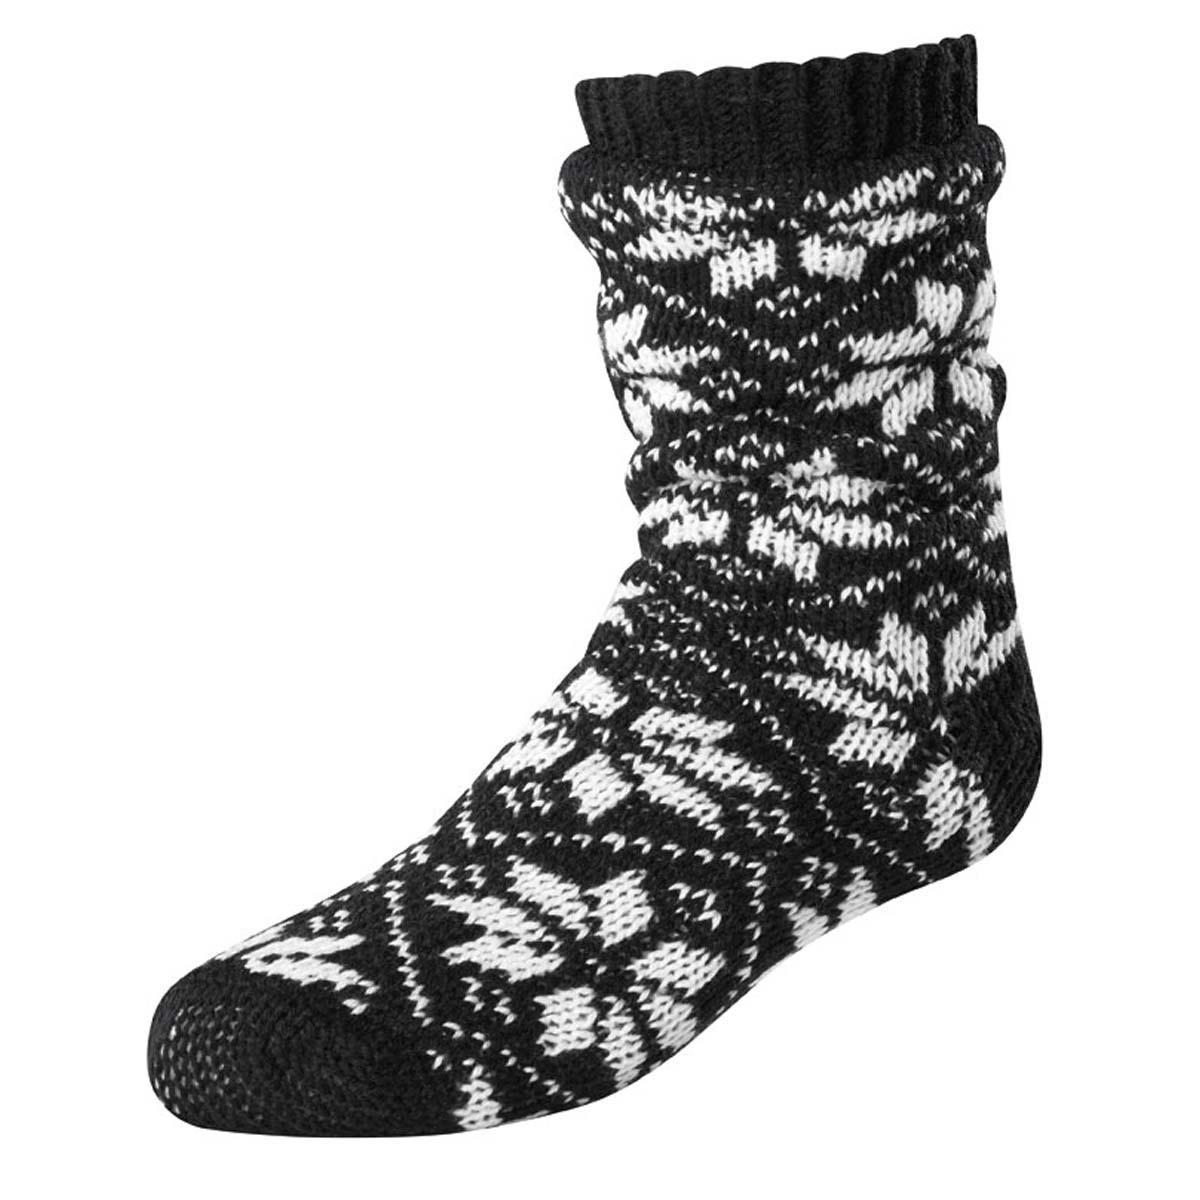 Terramar Slipper Socks with Gripper Dots - Women's | Buckmans.com